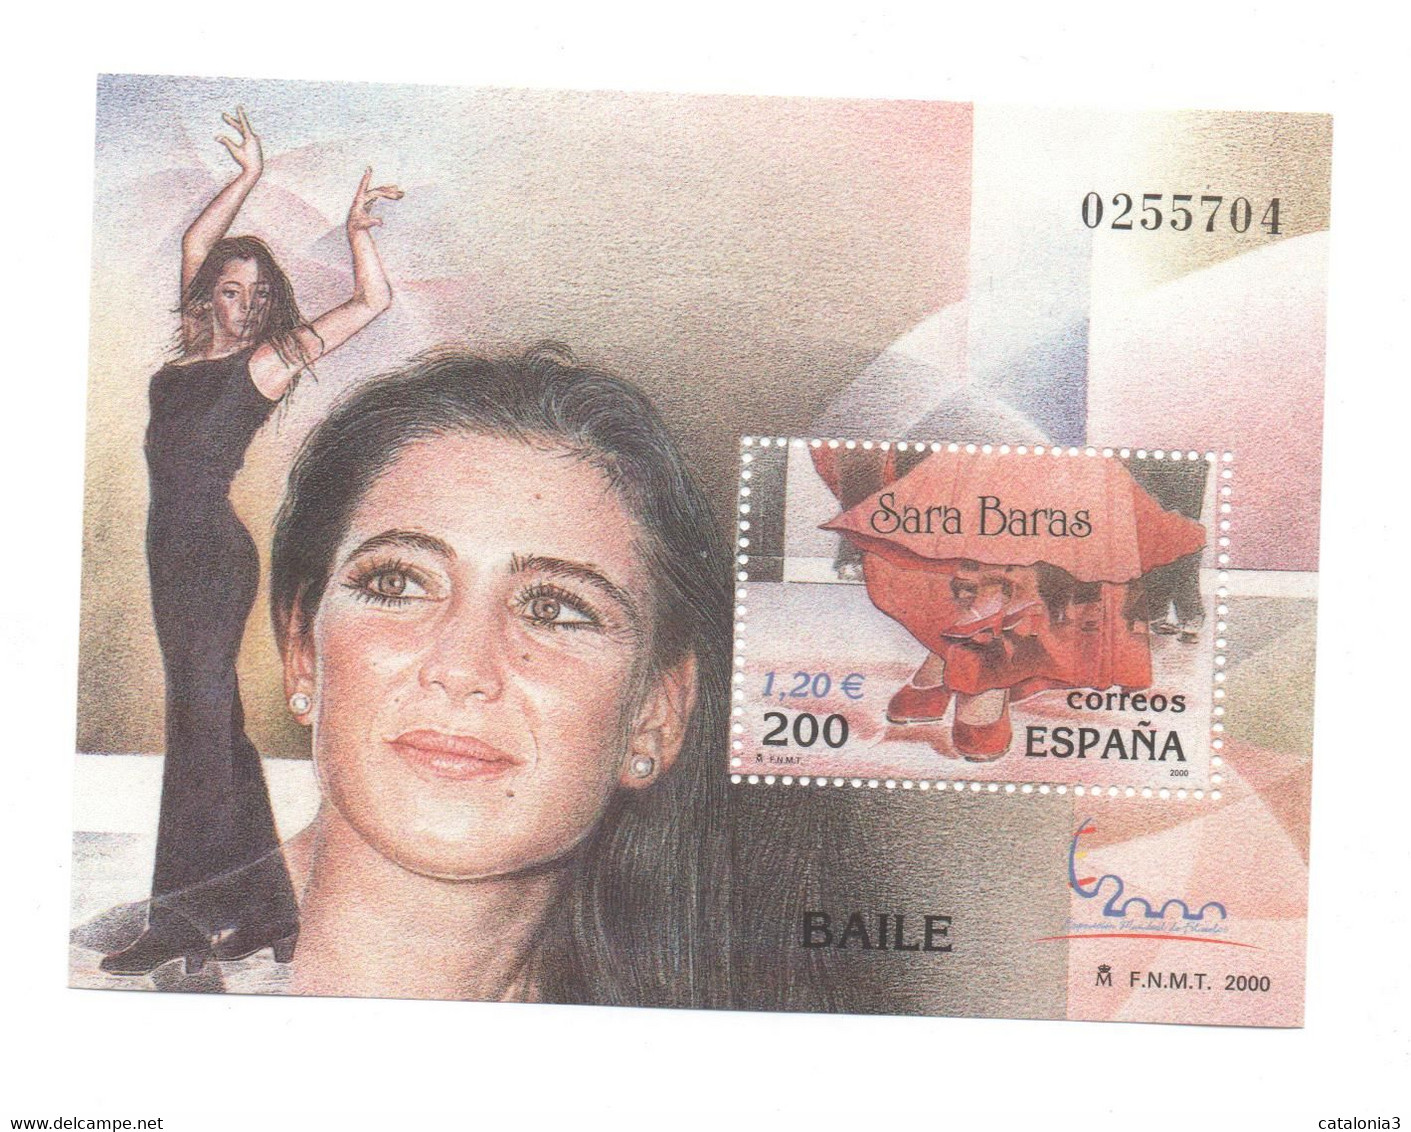 Hojita Sello BAILE Sara Baras (facial 1,20 €) - Feuillets Souvenir